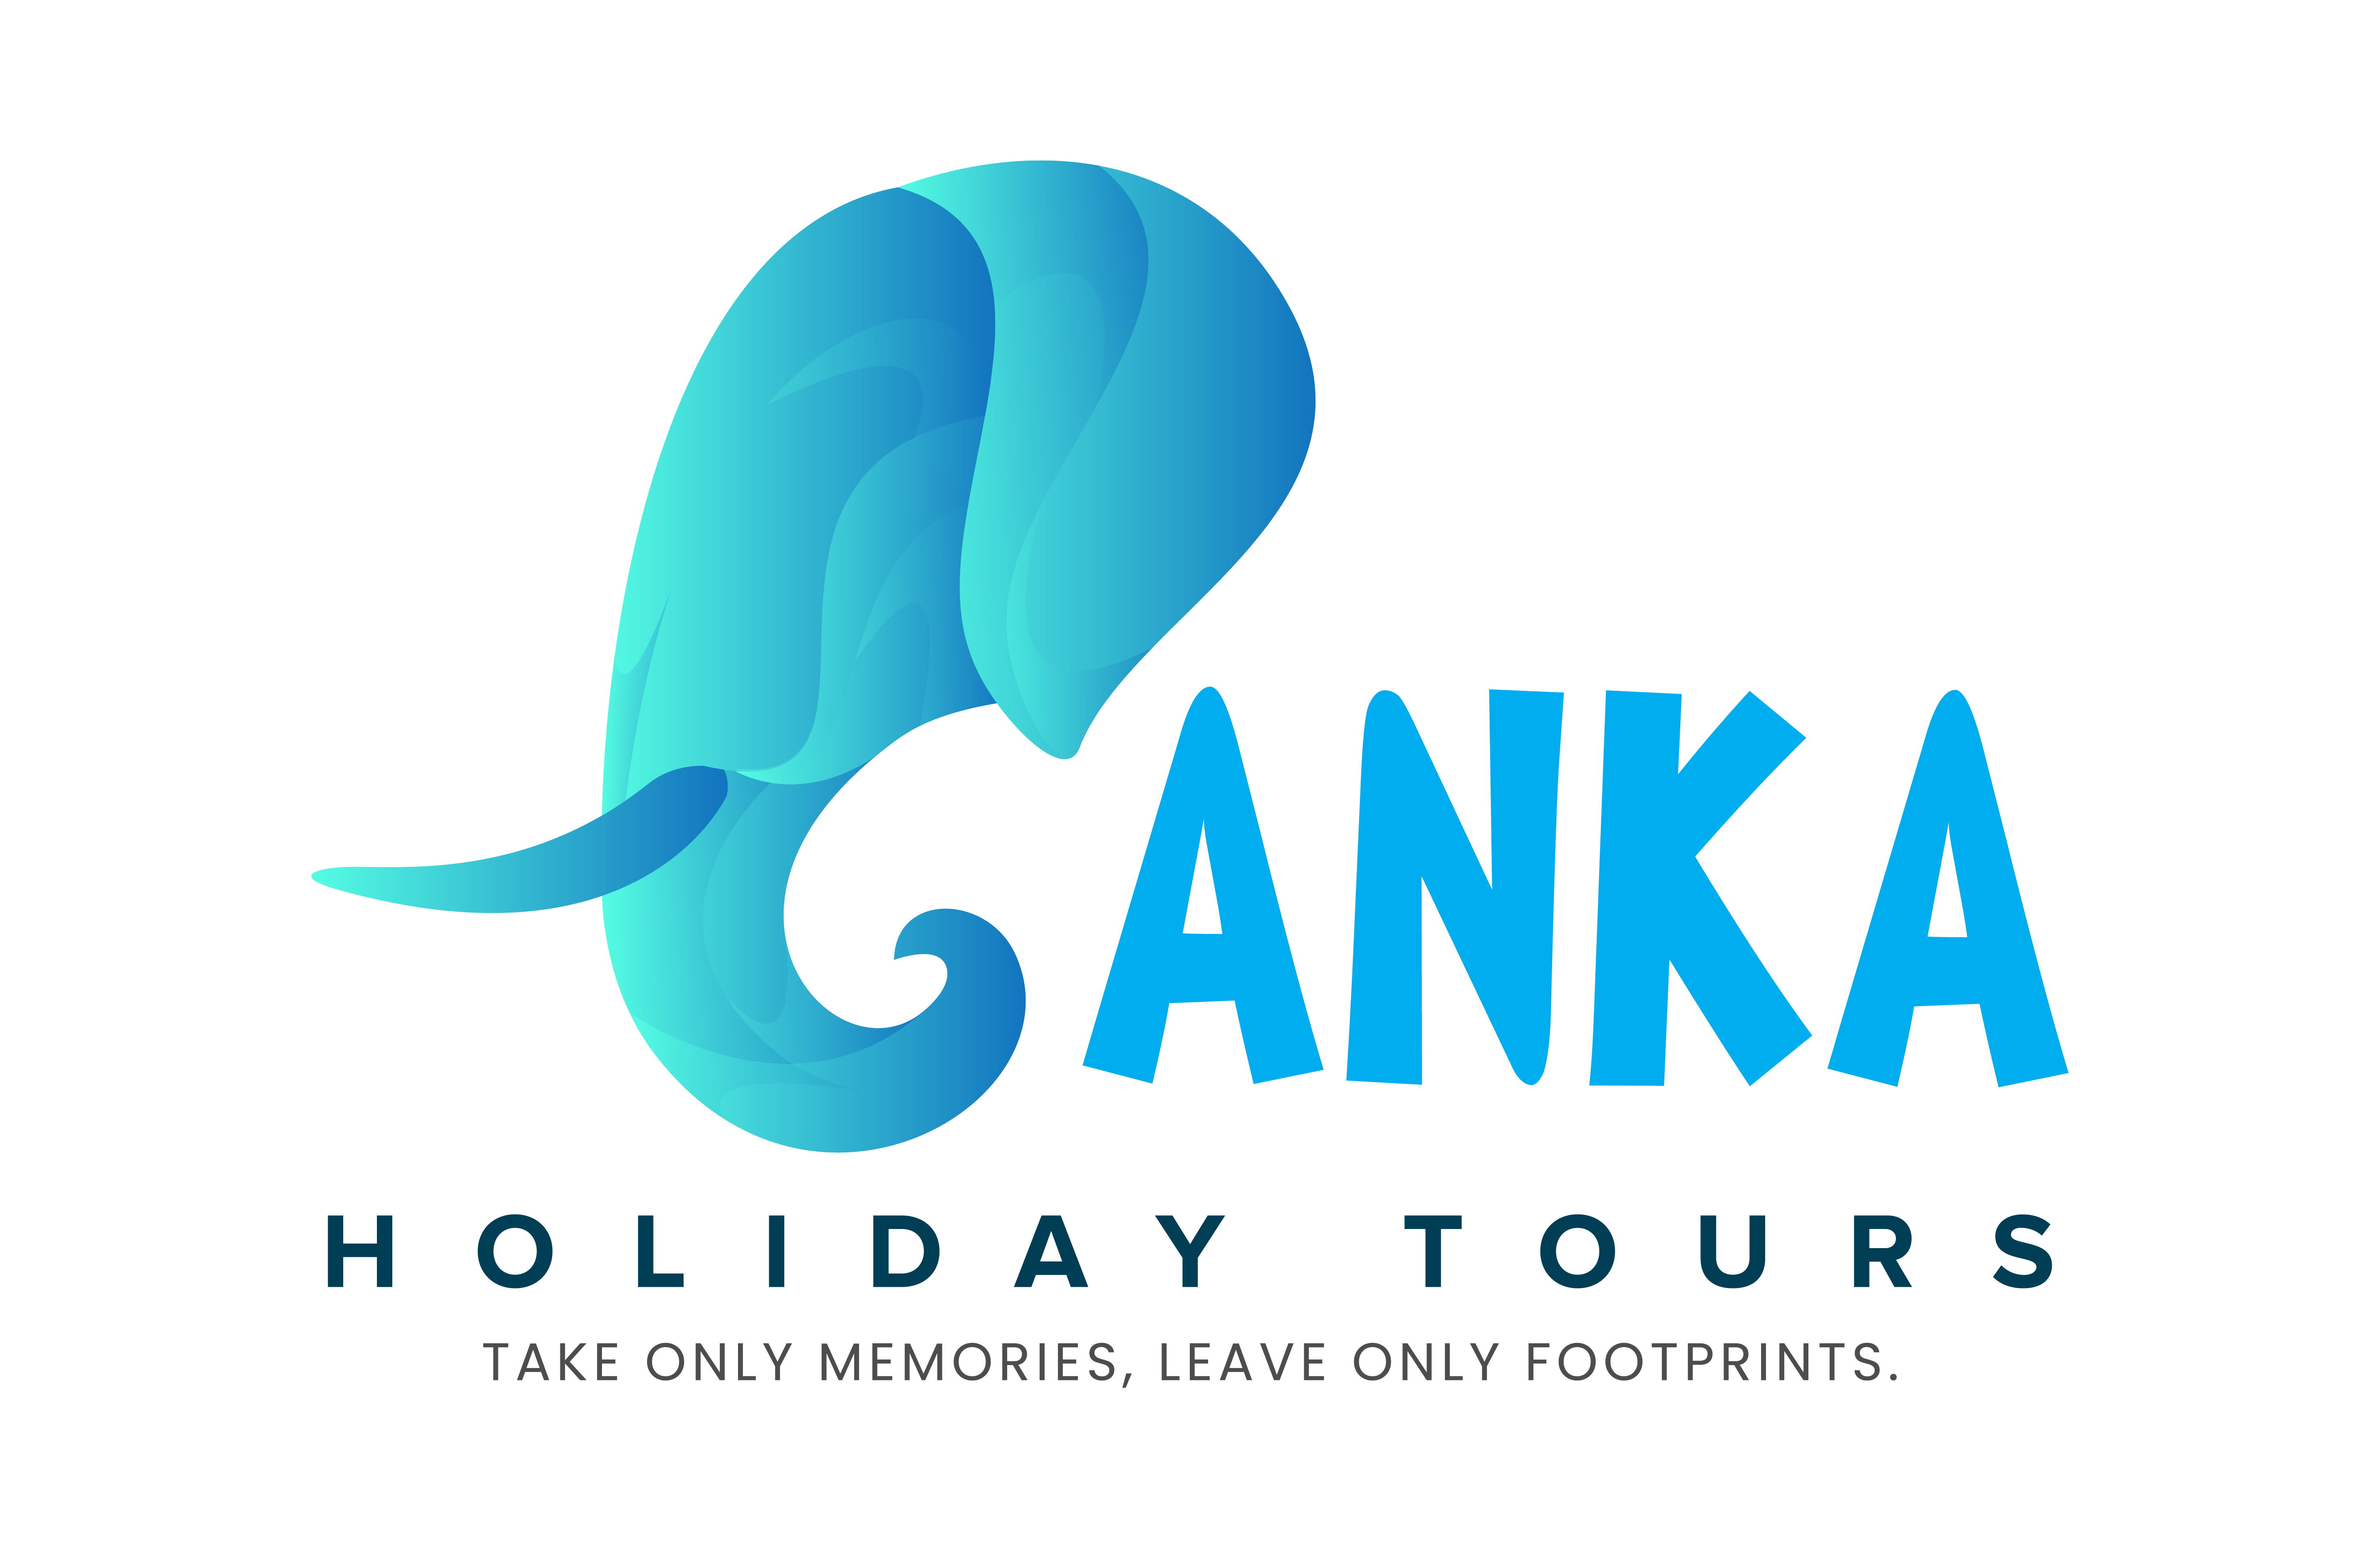 Lanka Holiday Tours